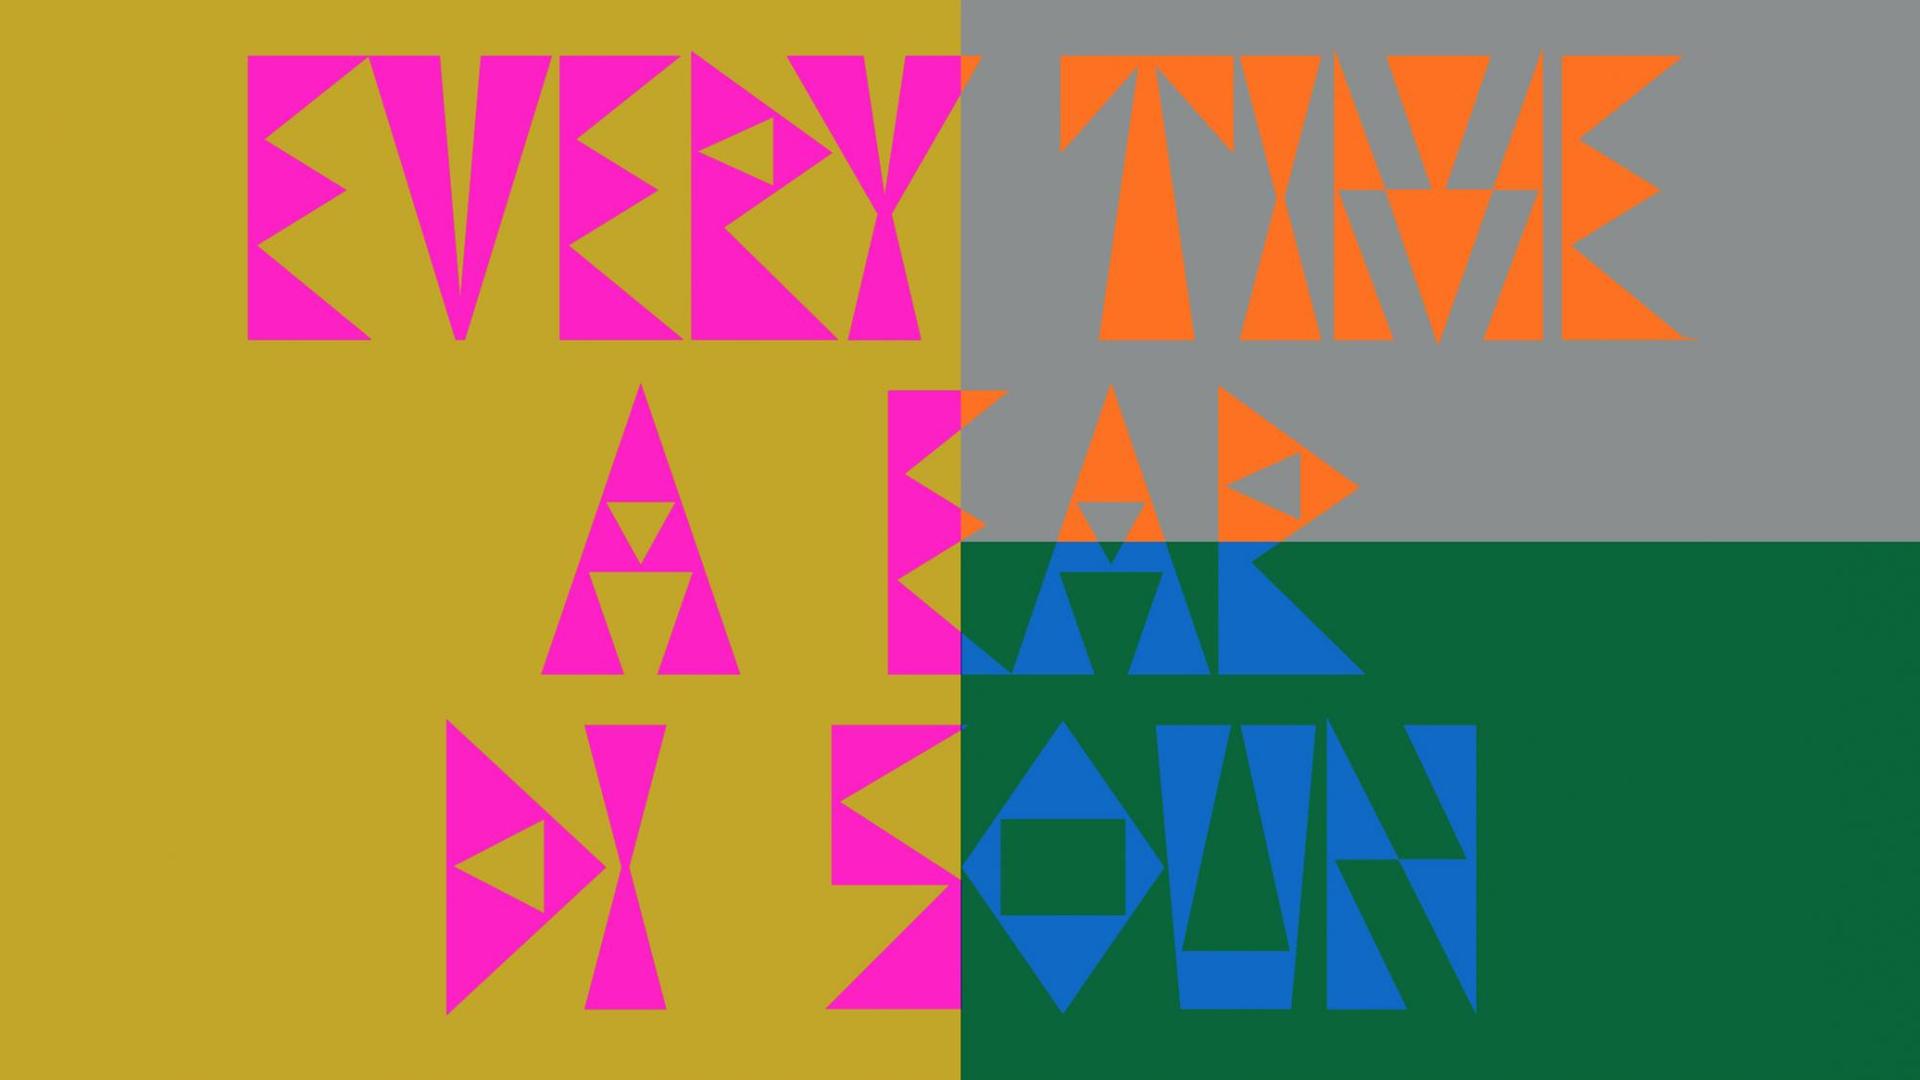 Bunte große Blockbuchstaben auf farbenfrohem Hintegrund: "Every Time A Ear di Soun" - Die Klänge dieser Radiokunstreihe werden von acht Sendern weltweit ausgestrahlt.